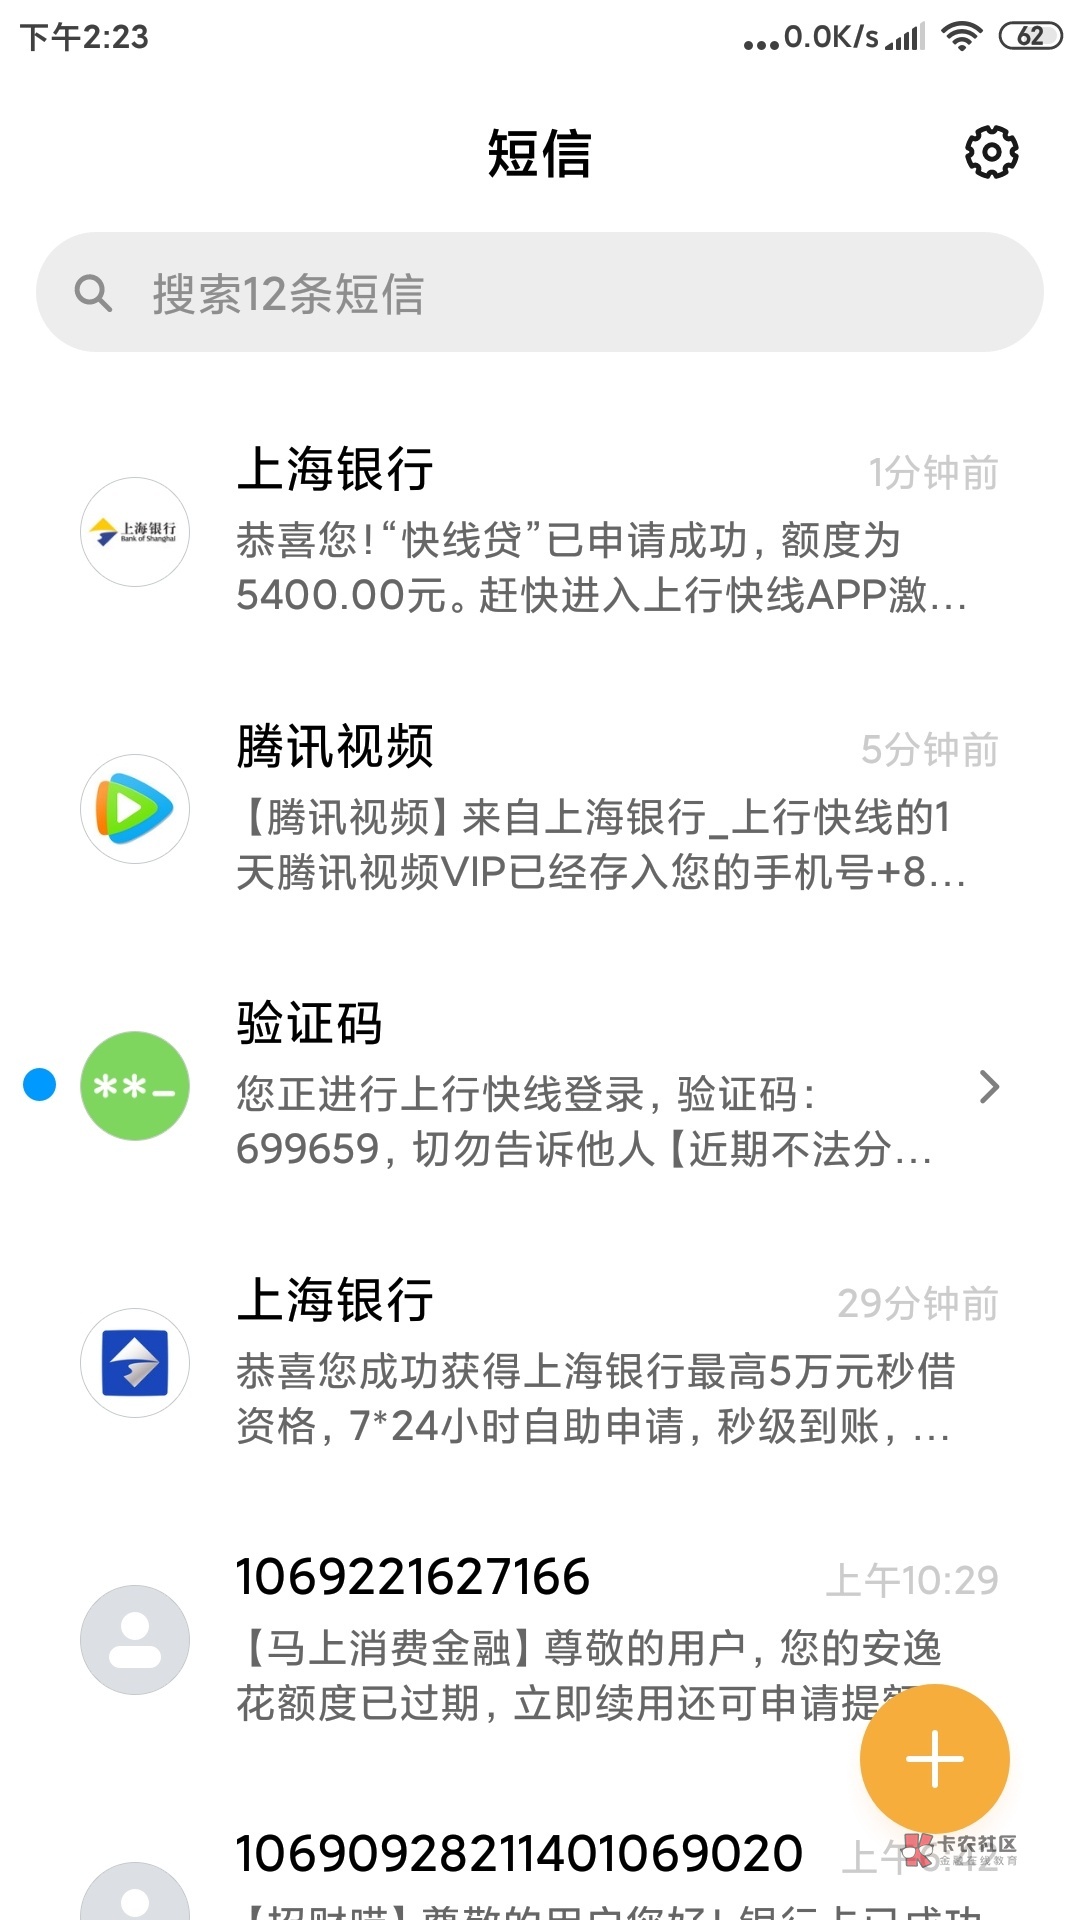 管理加精，上海快线贷下款。今天短信邀请，我以为是骗...97 / 作者:不想再来一次 / 